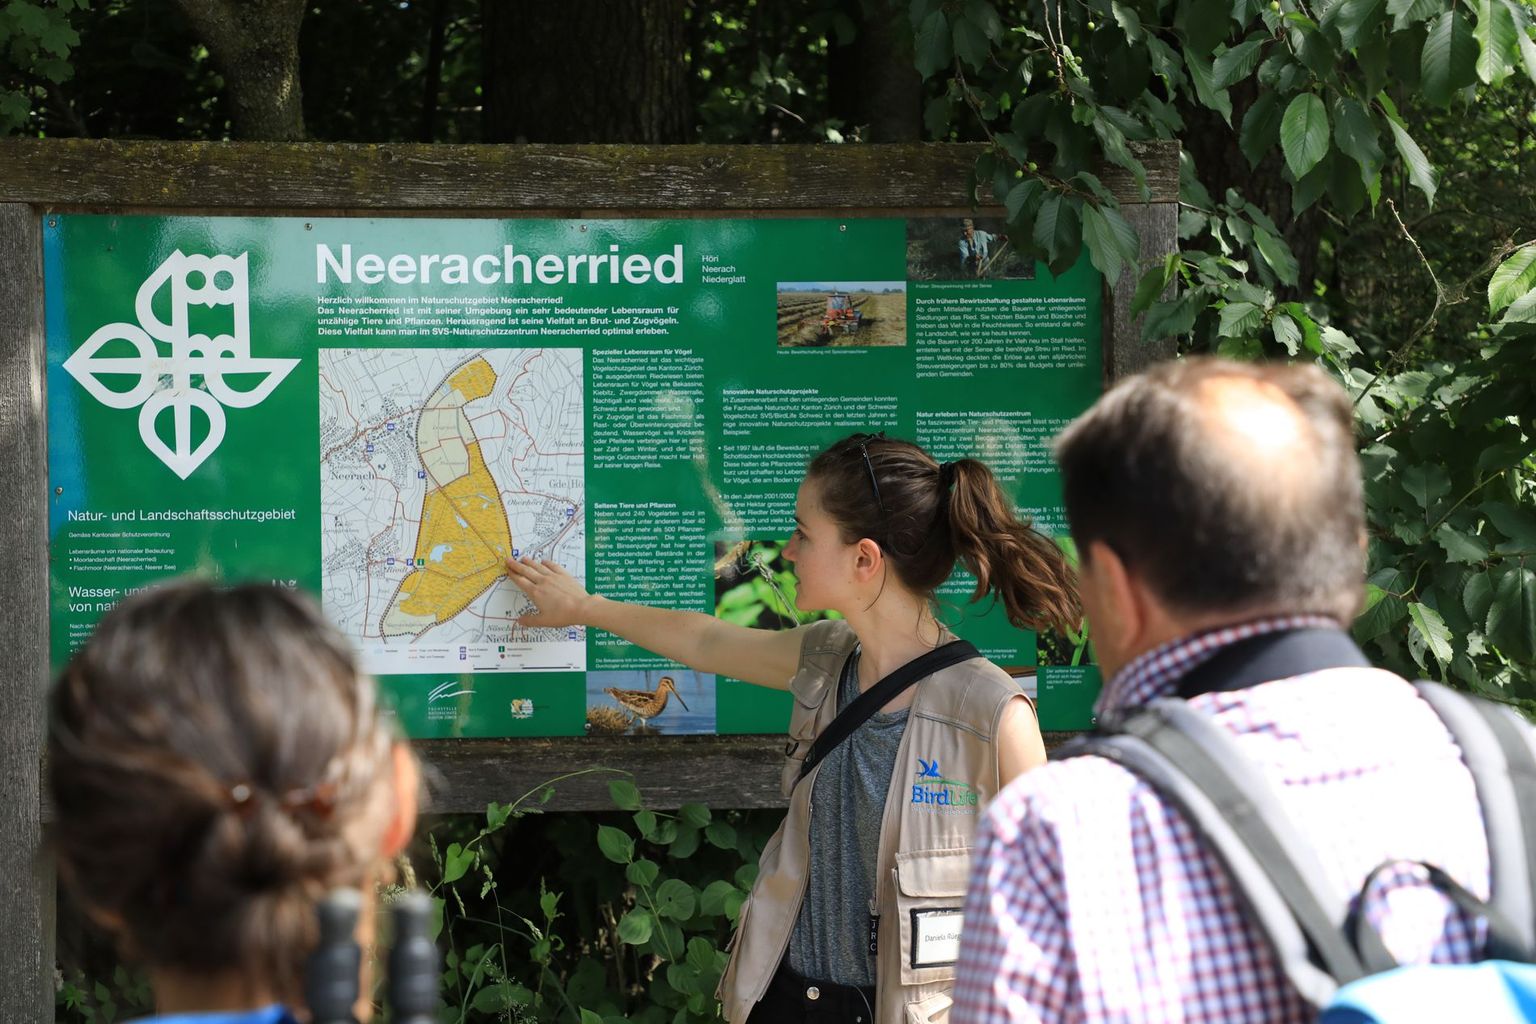 Neeracherried (Bild 02)